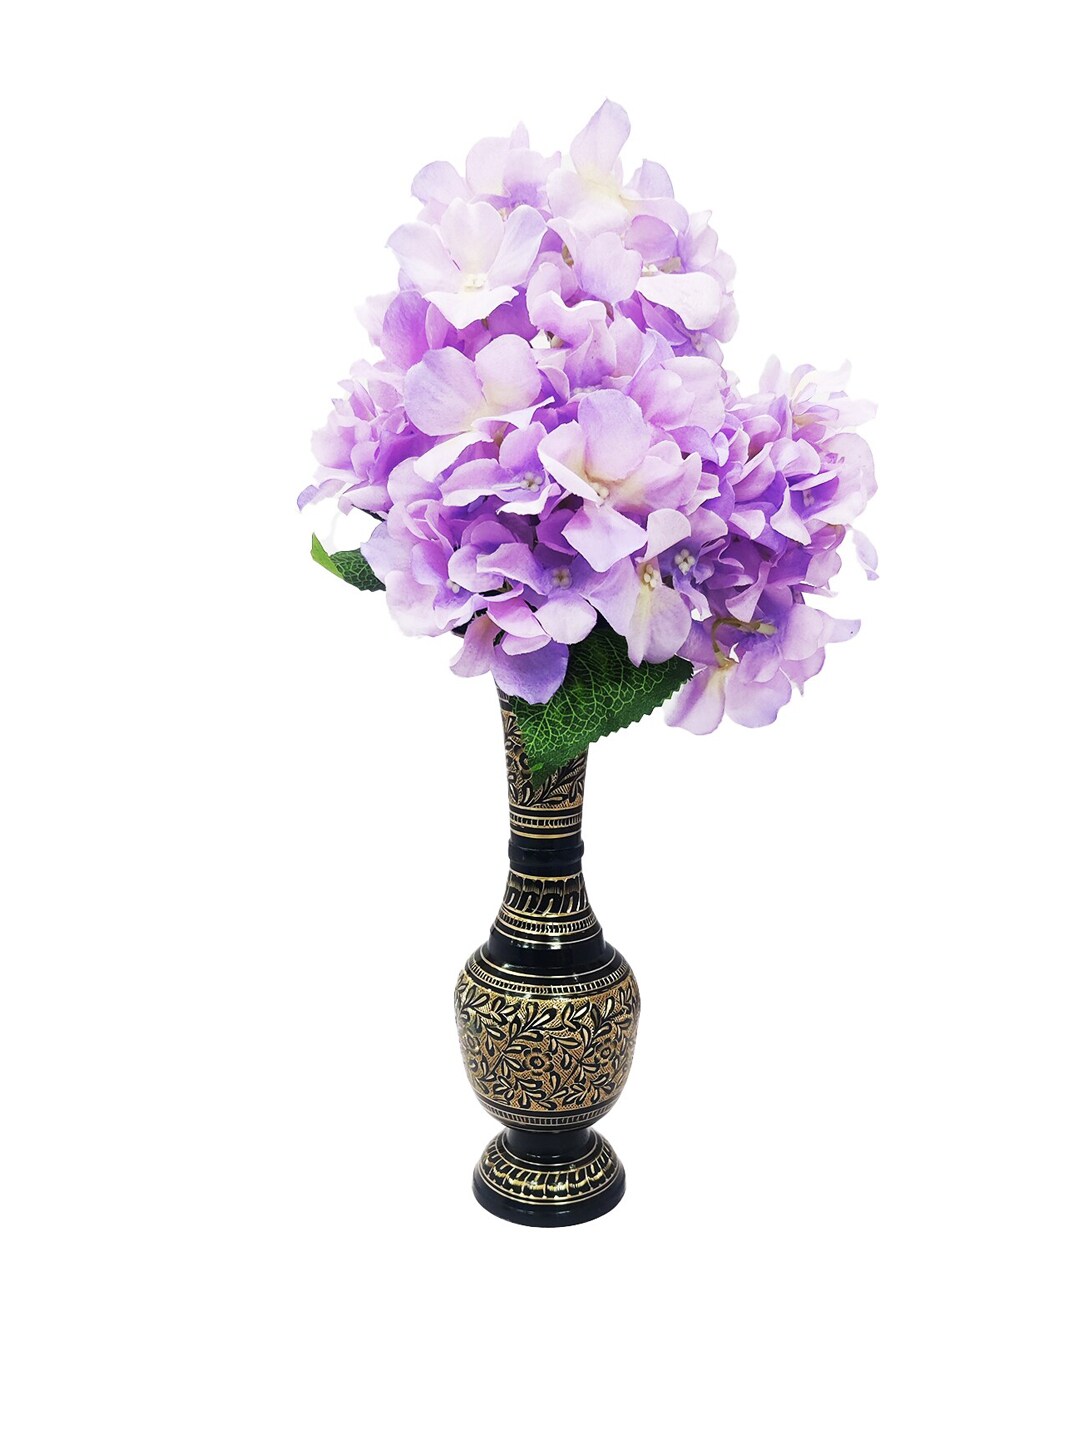 WENS Black Metal Flower Vase Price in India